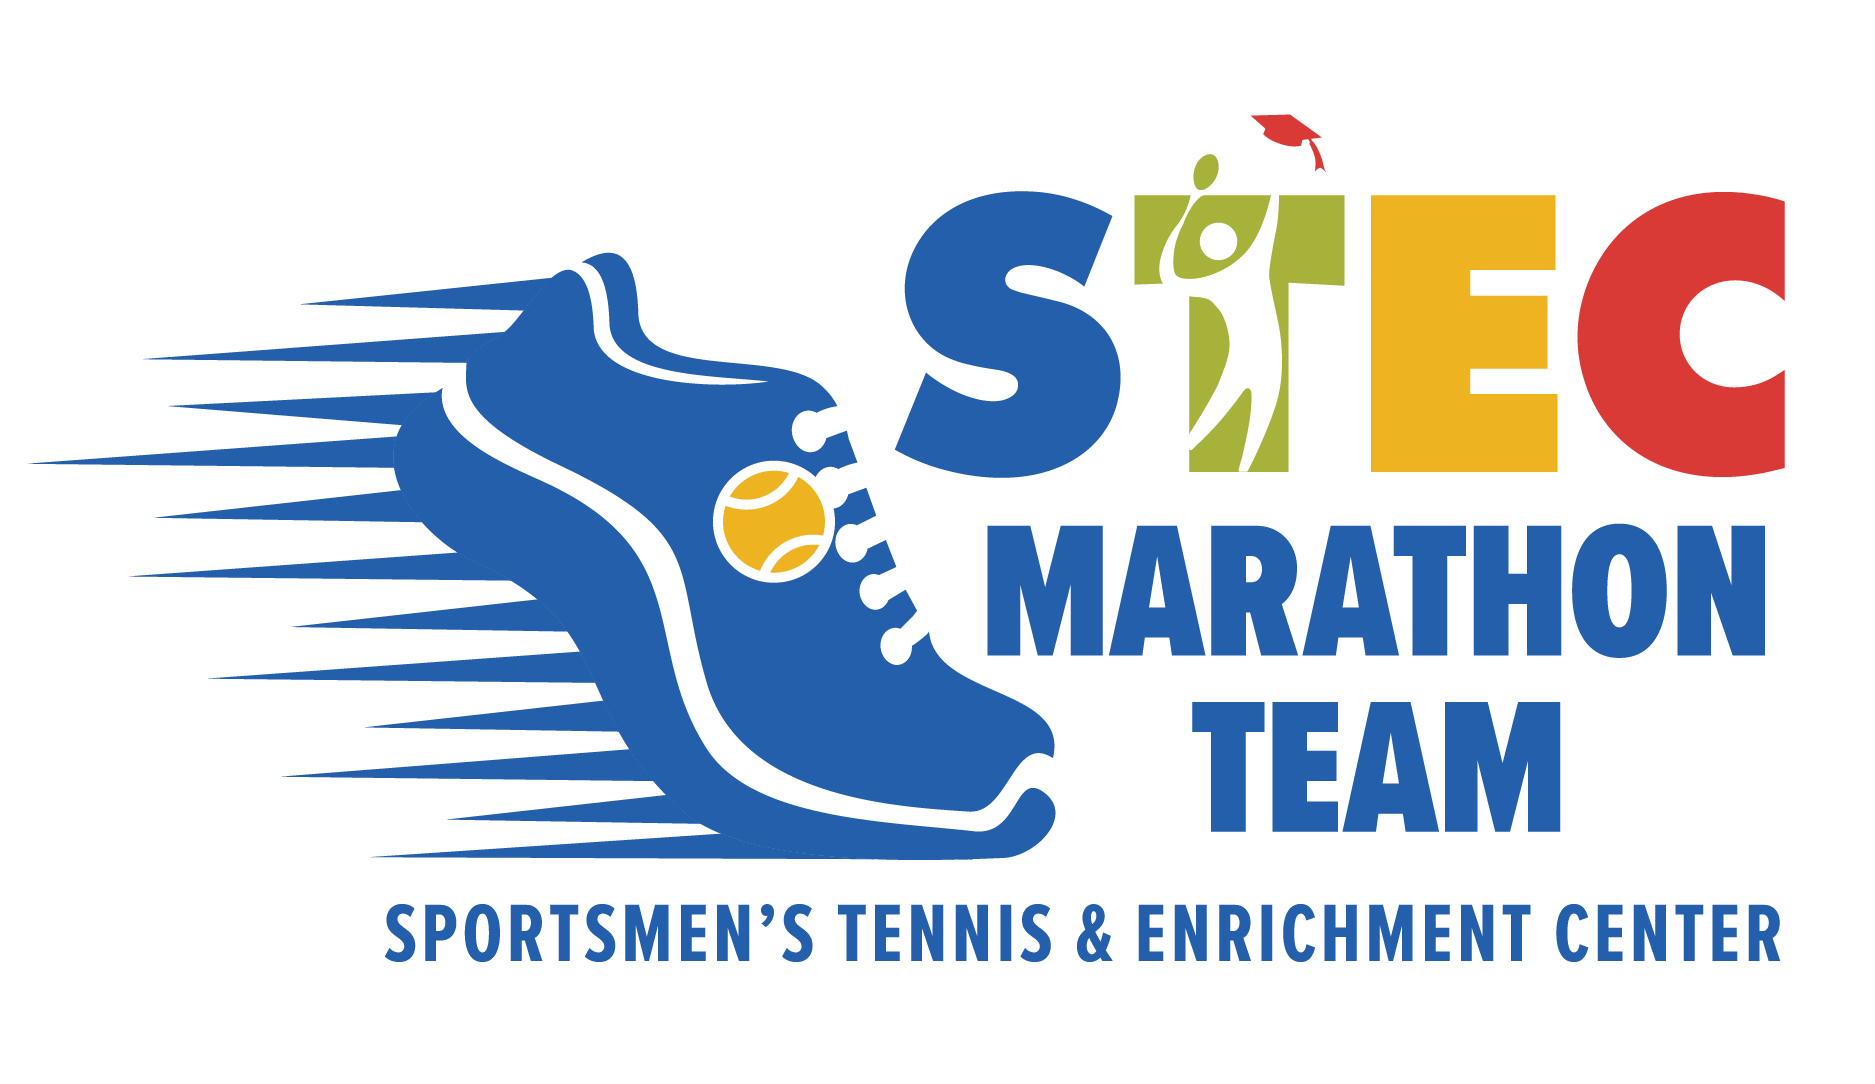 Sportsmen's Marathon Team Tommy Grosskopf The Sportsmen’s Tennis